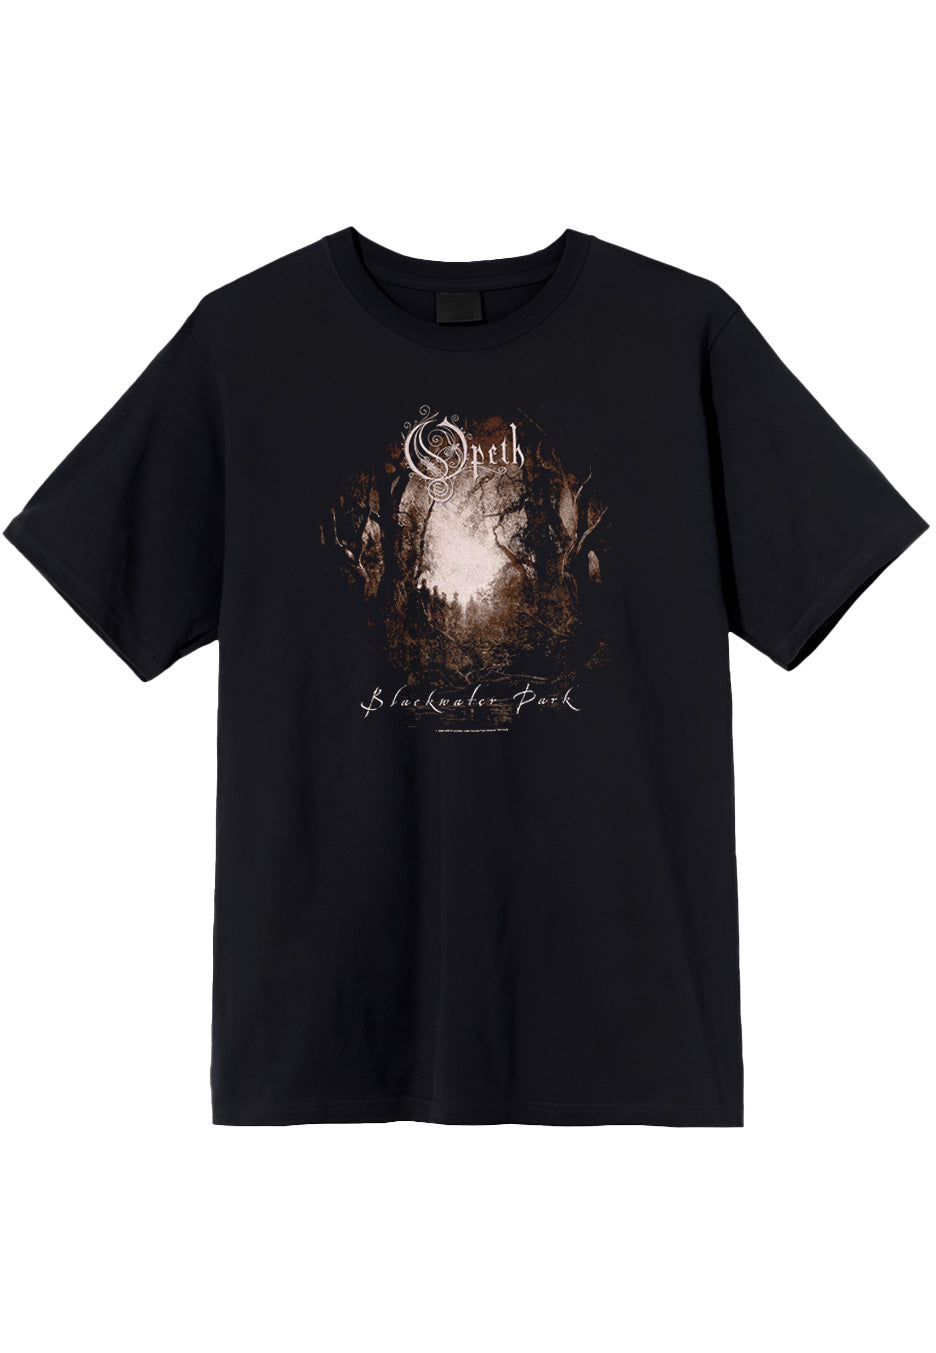 Opeth - Water Park - T-Shirt